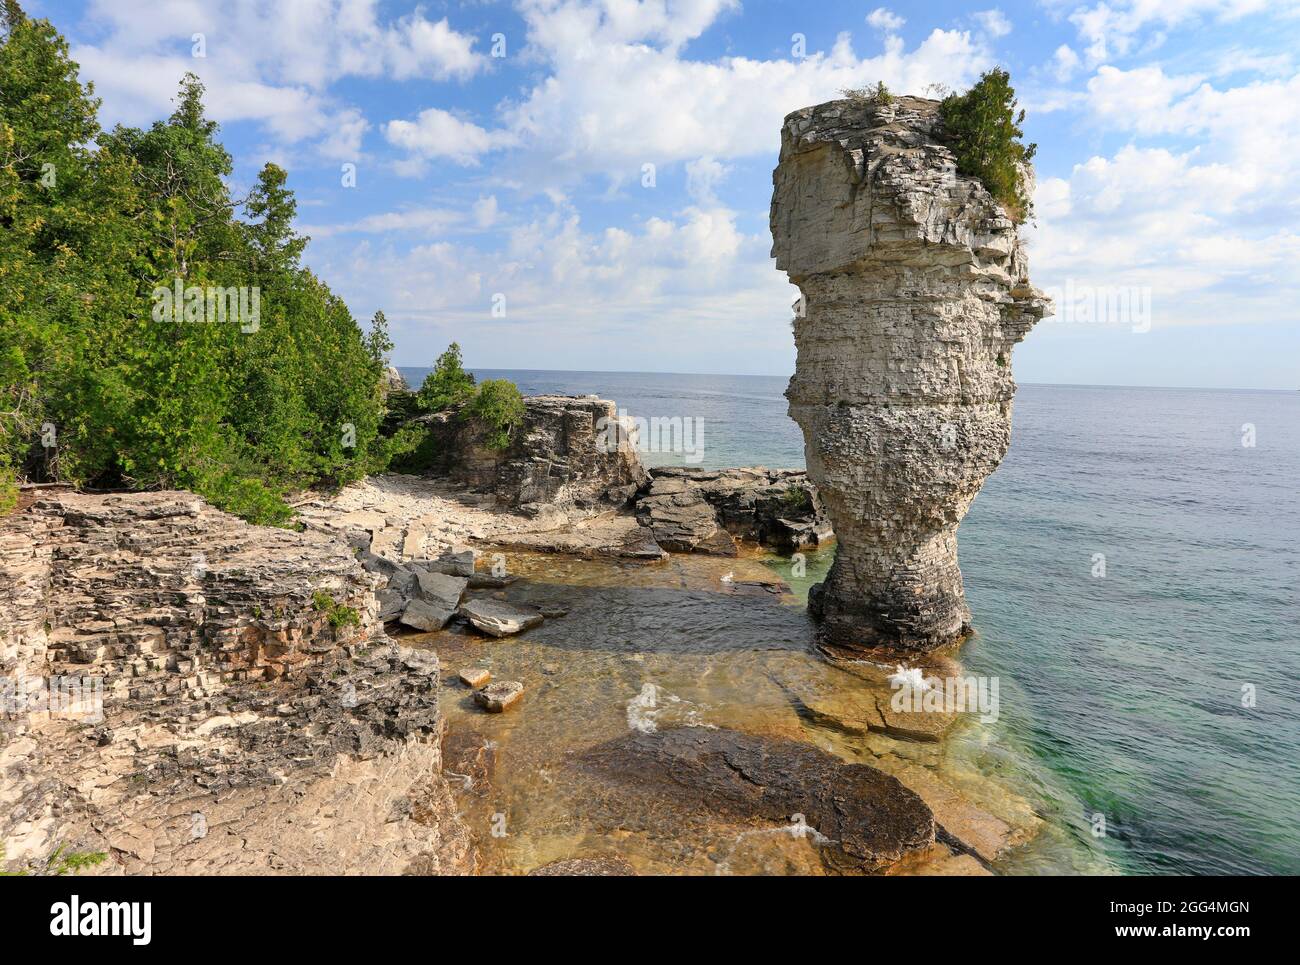 Le pilier rocheux s'élève des eaux de la baie Georgienne, sur l'île Flowerpot, dans le parc marin national Fathom Five, lac Huron, Canada Banque D'Images